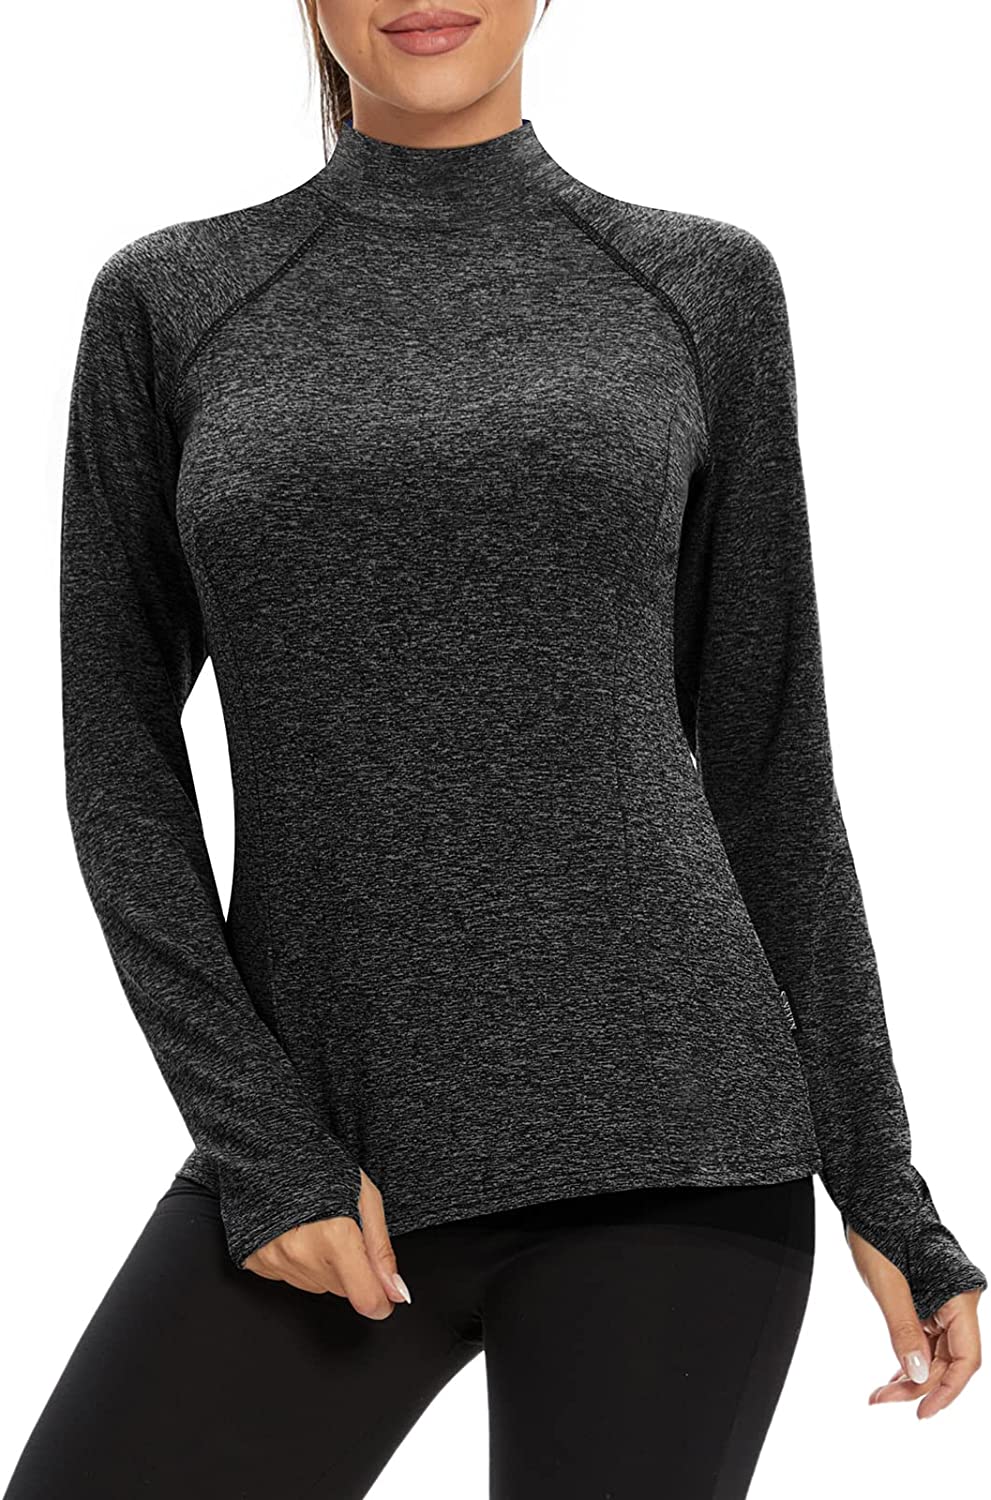 thumbnail 23  - Soneven Women Fleece Thermal Long Sleeve Running Shirt Workout Tops Moisture Wic